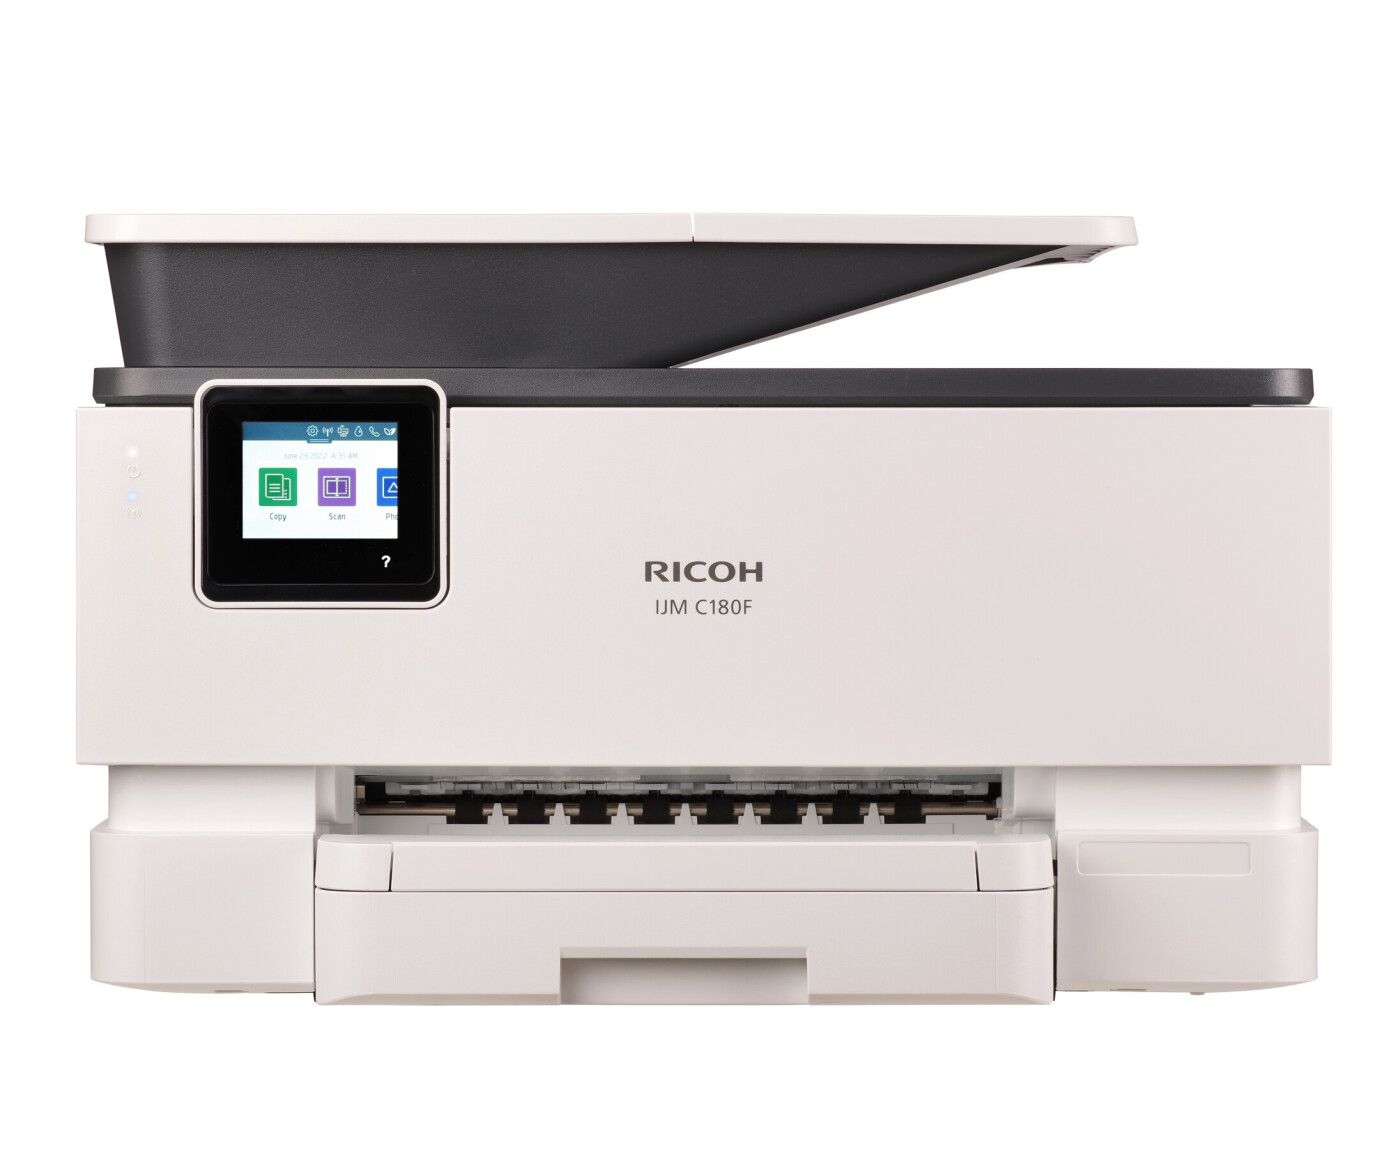 Vorschau: Ricoh IJM C180F 4-in-1 Multifunktionsdrucker